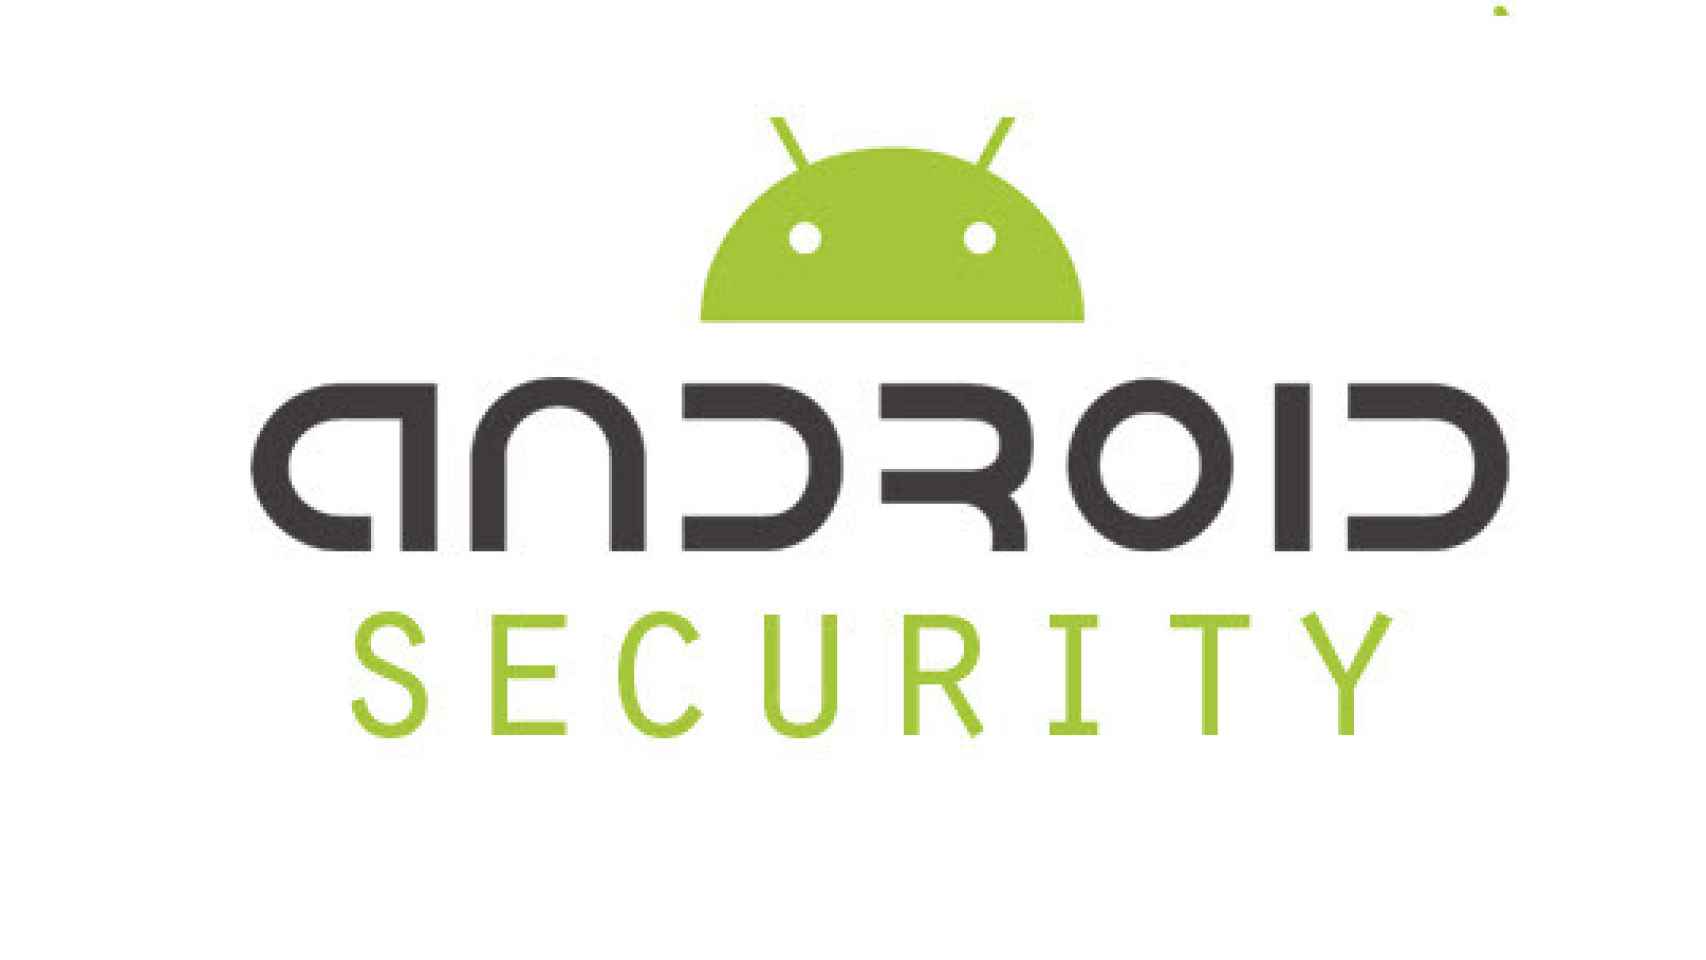 Android L traerá el cifrado de datos activado por defecto